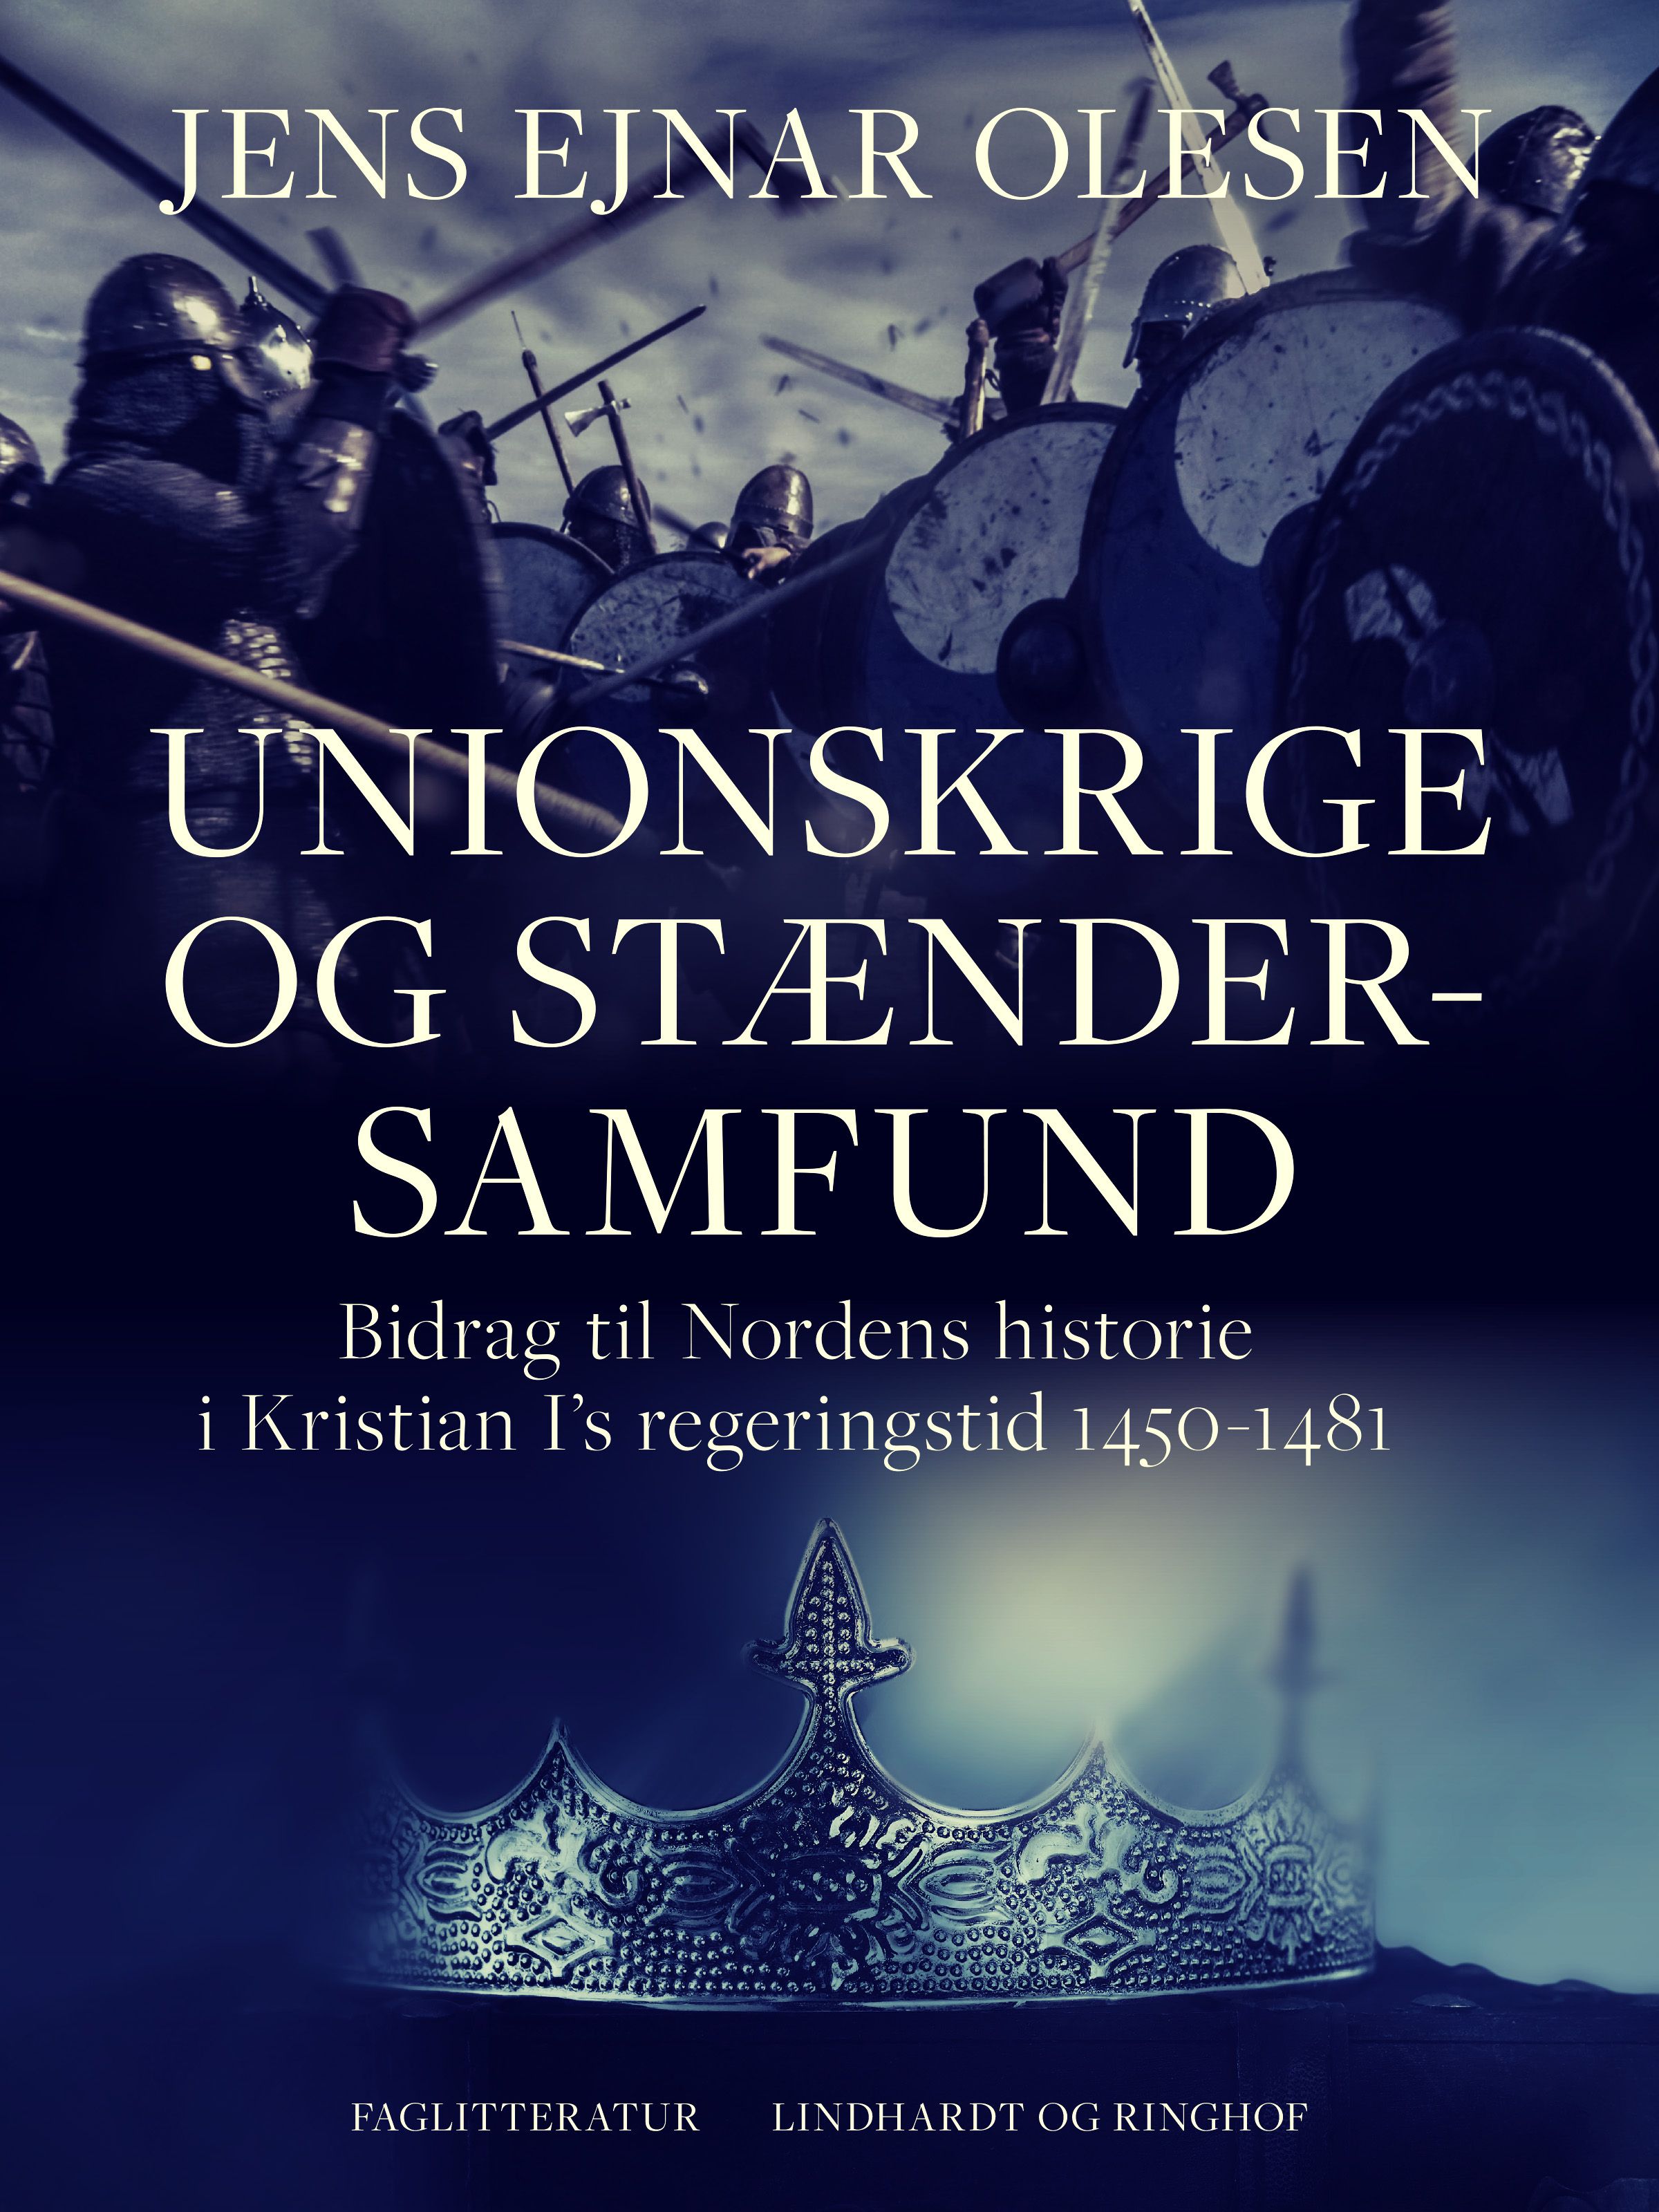 Unionskrige og stændersamfund. Bidrag til Nordens historie i Kristian I's regeringstid 1450-1481, e-bok av Jens Ejnar Olesen